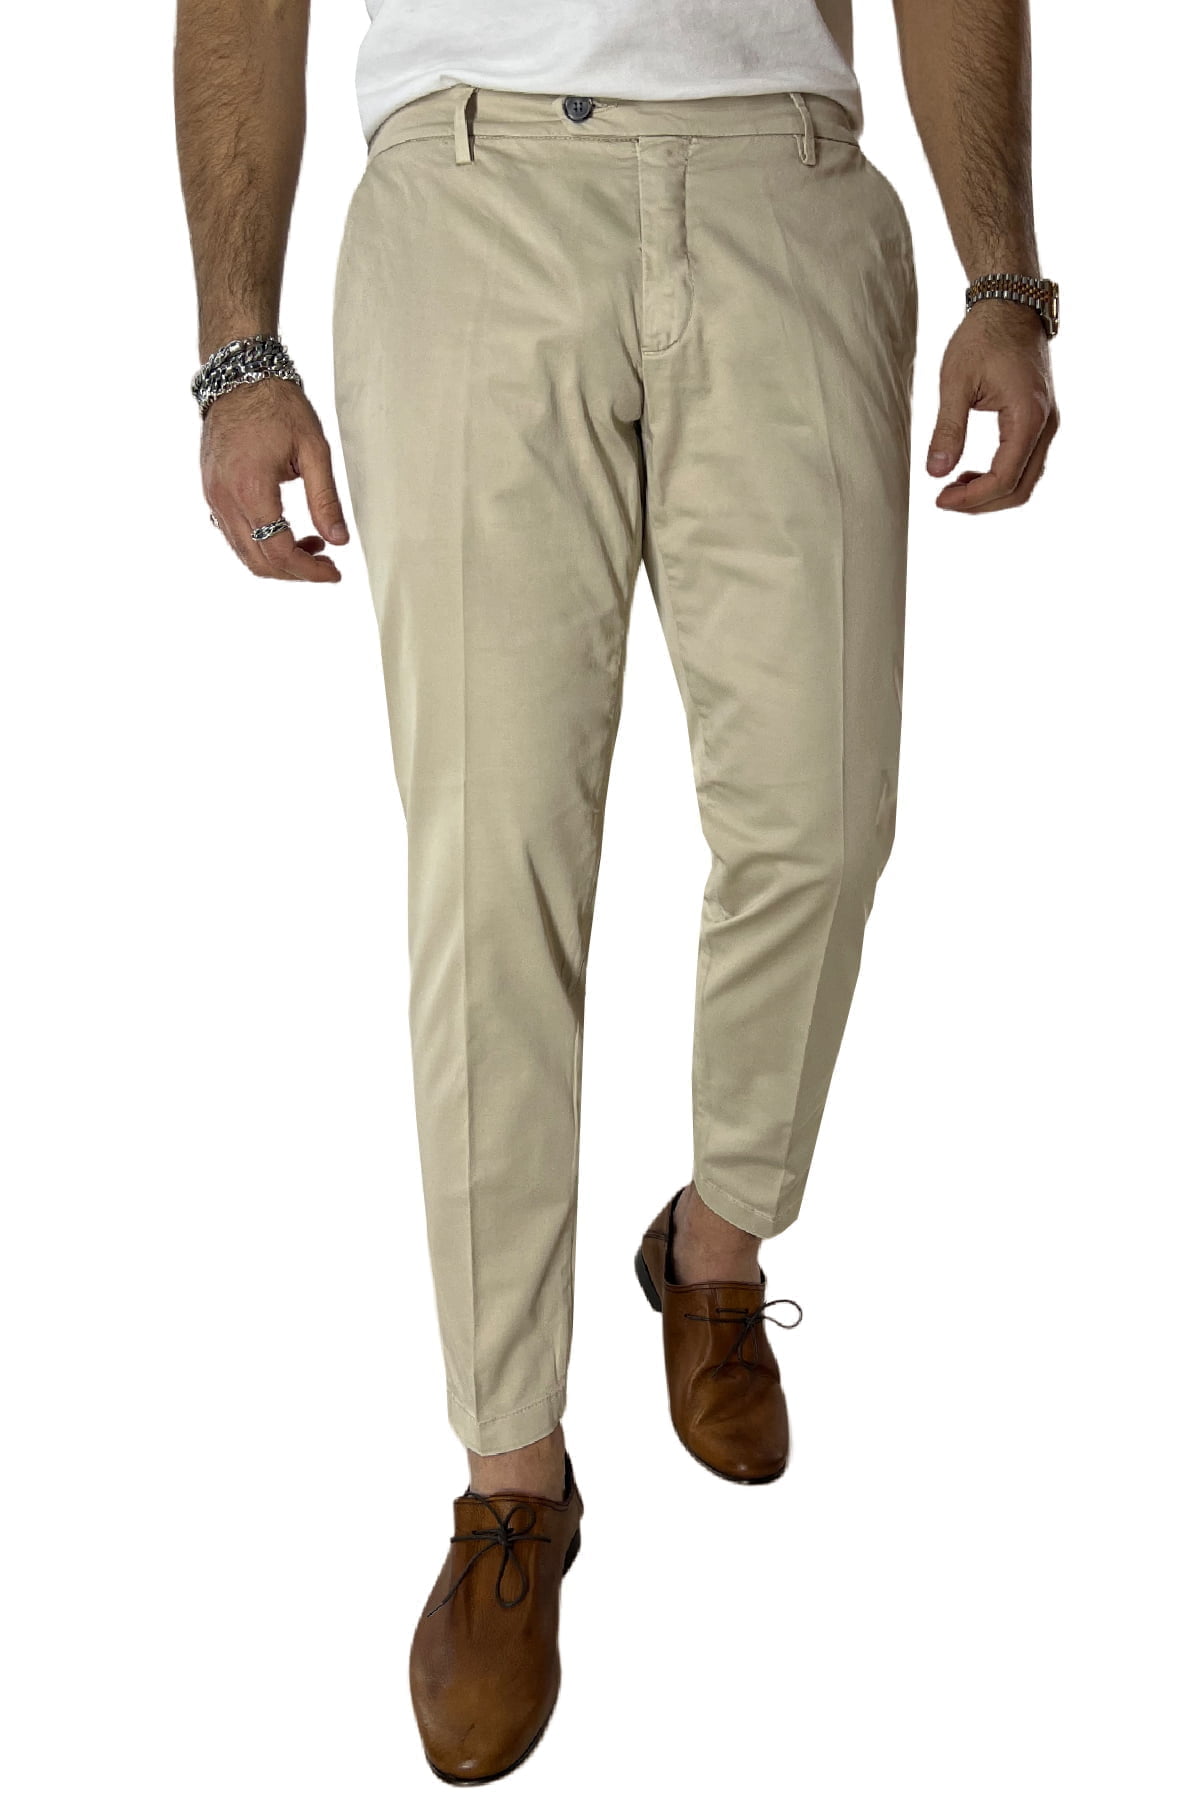 Pantalone uomo beige in Cotone tasca america leggermente elastico estivo